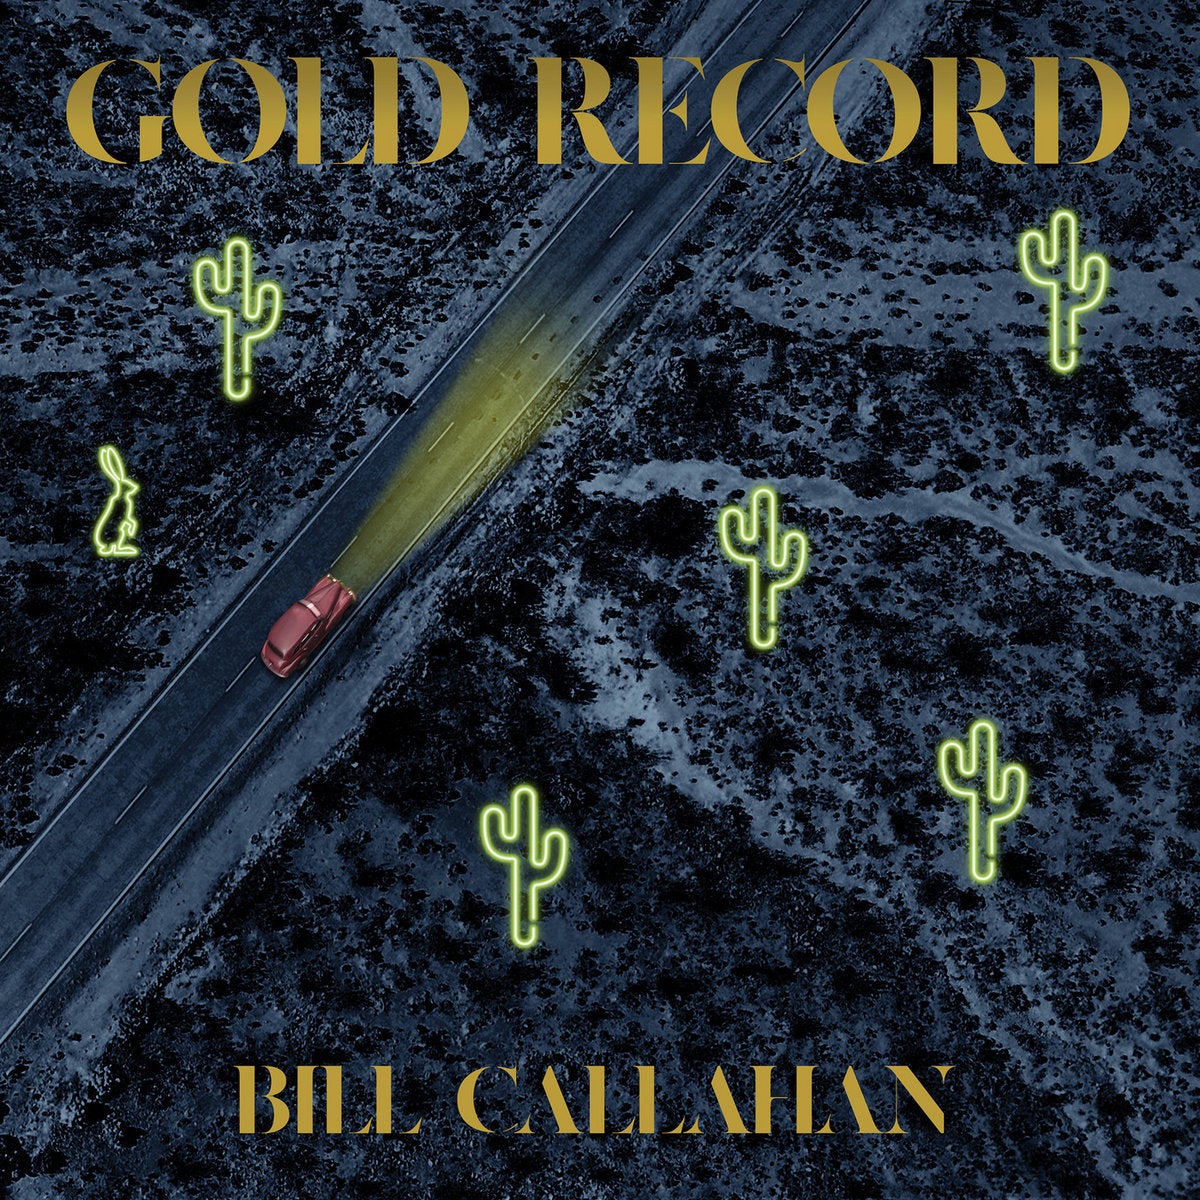 ‘Gold Record’ album artwork